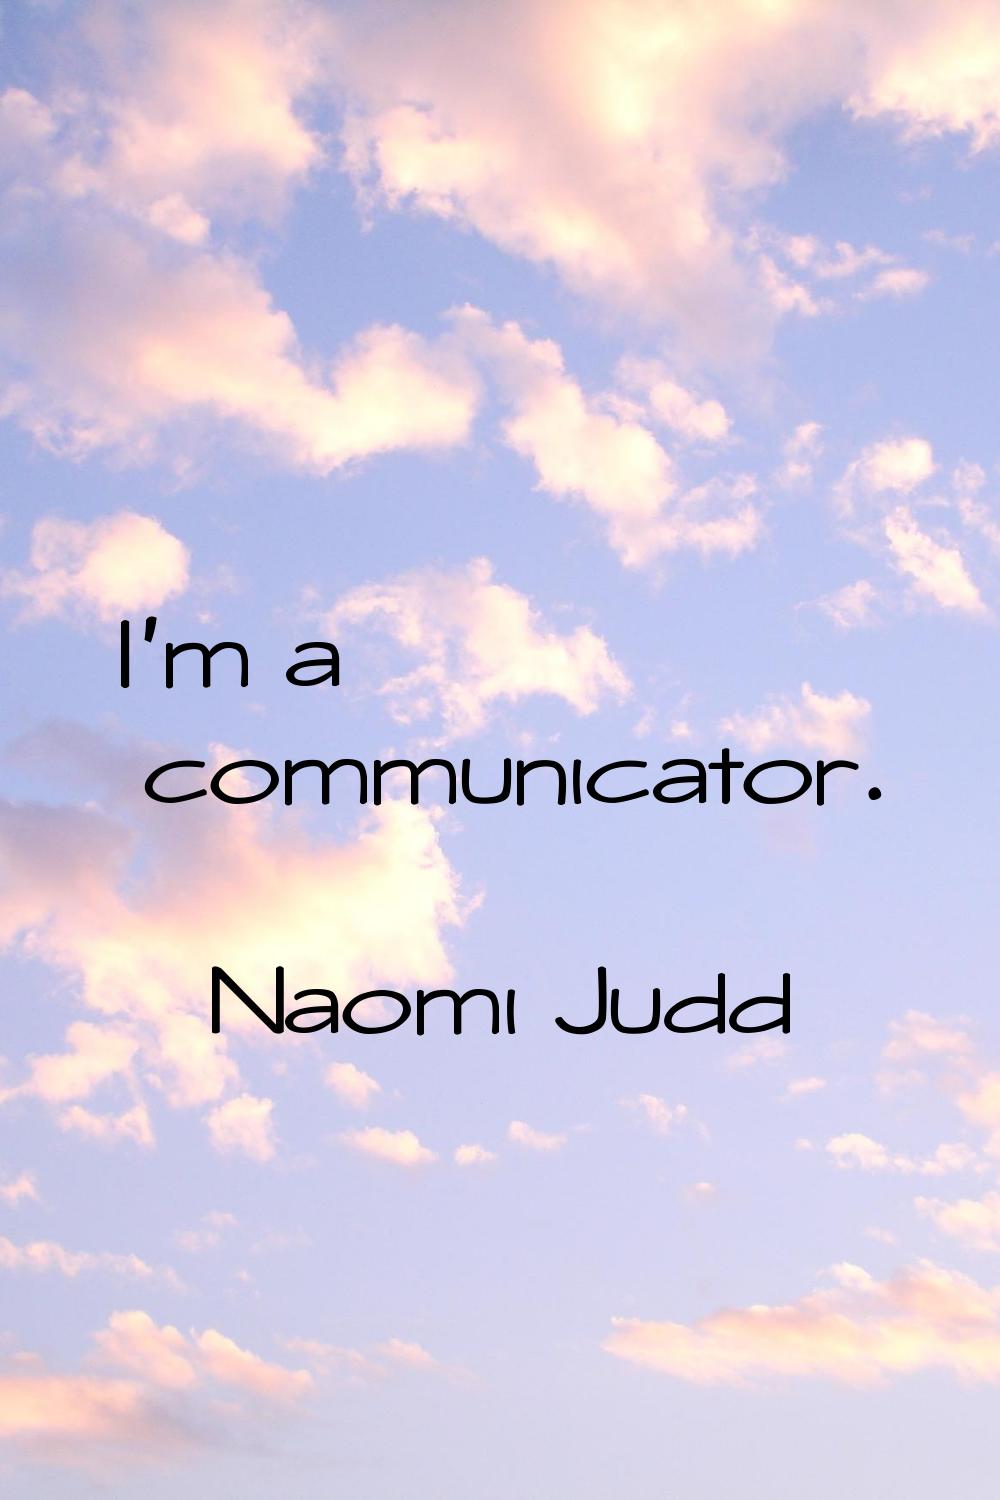 I'm a communicator.